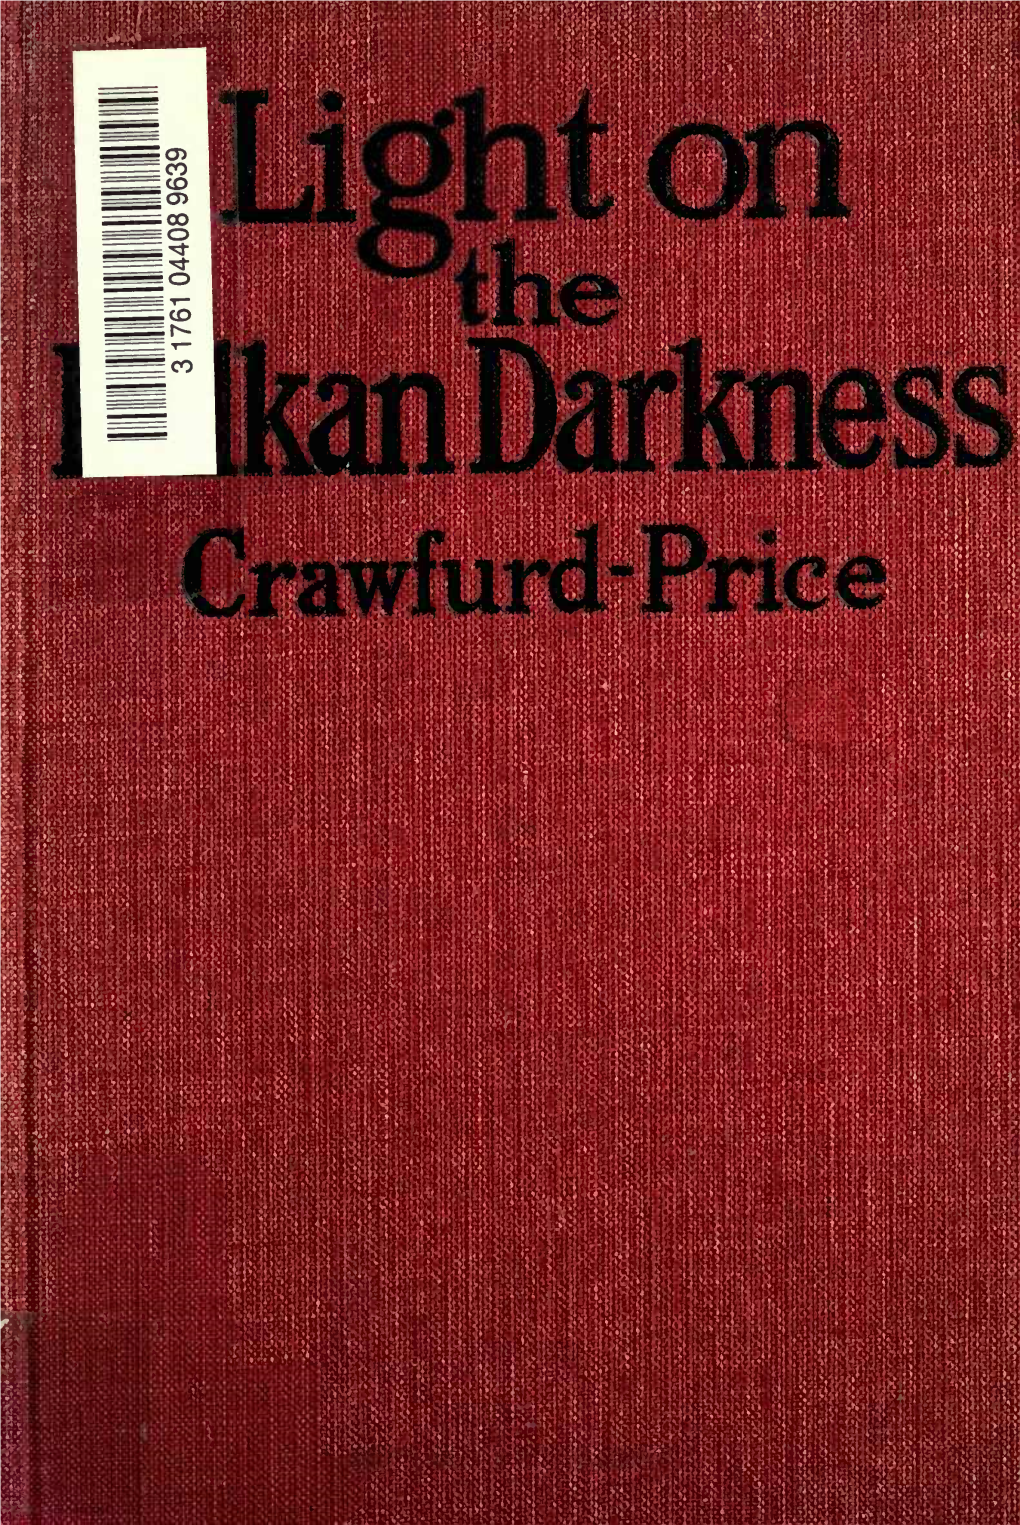 Crawfurd-Price